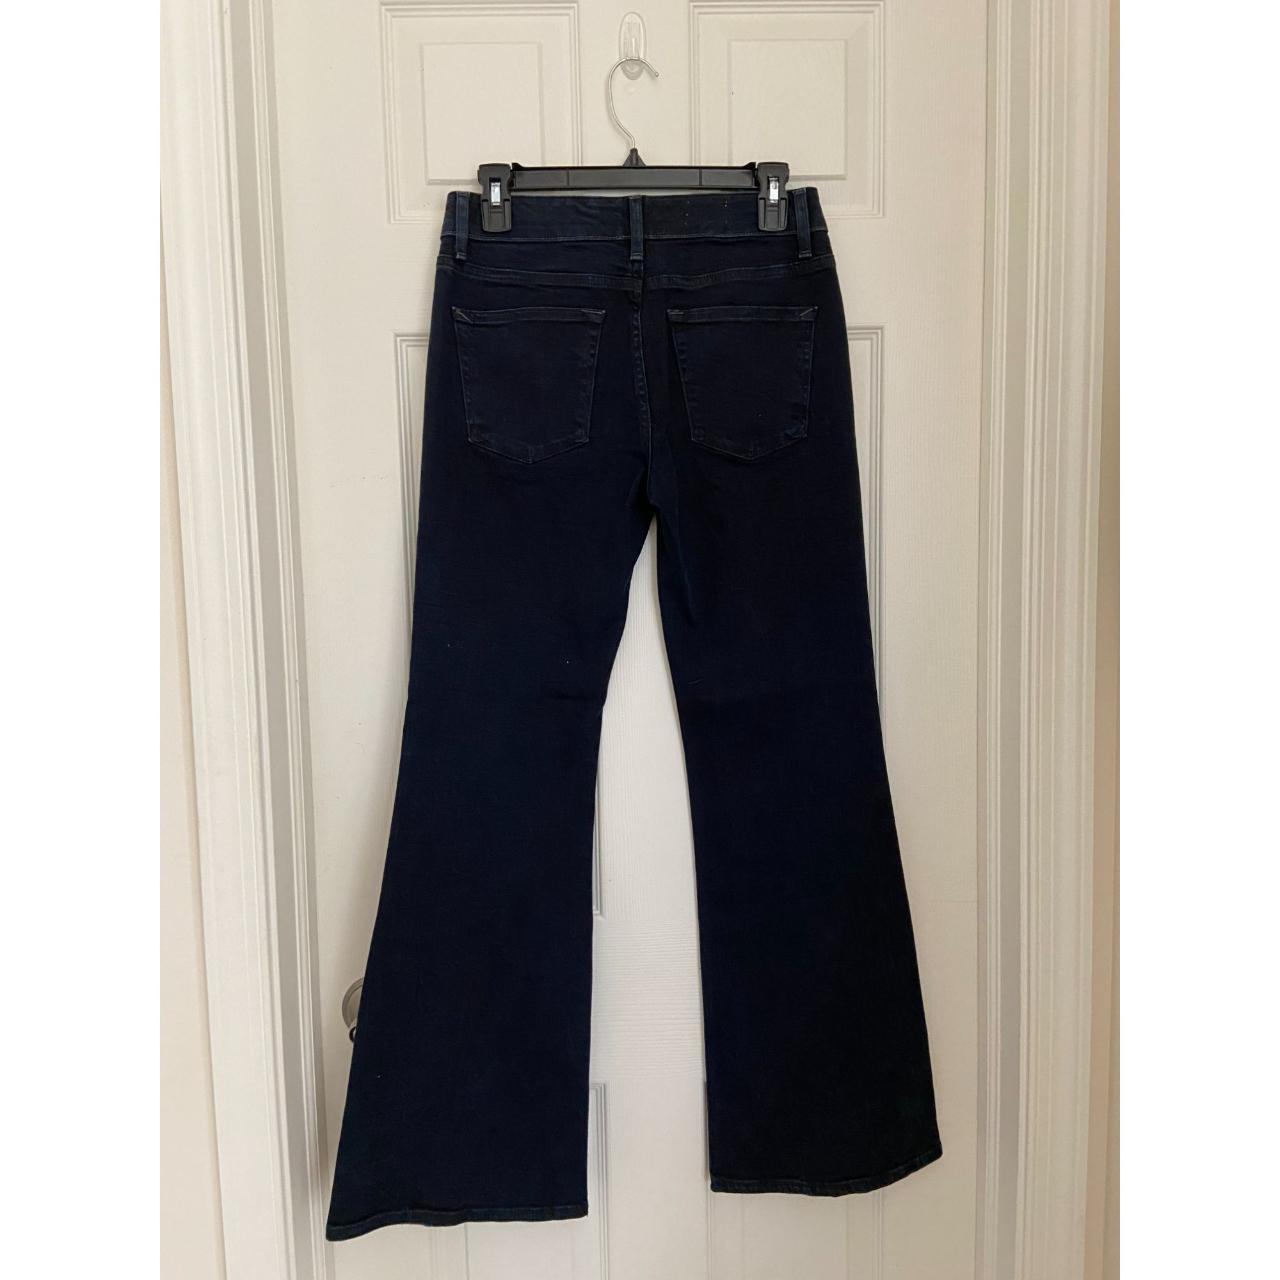 Gap 1969 Modern Flare Jeans (Size 27) - Depop